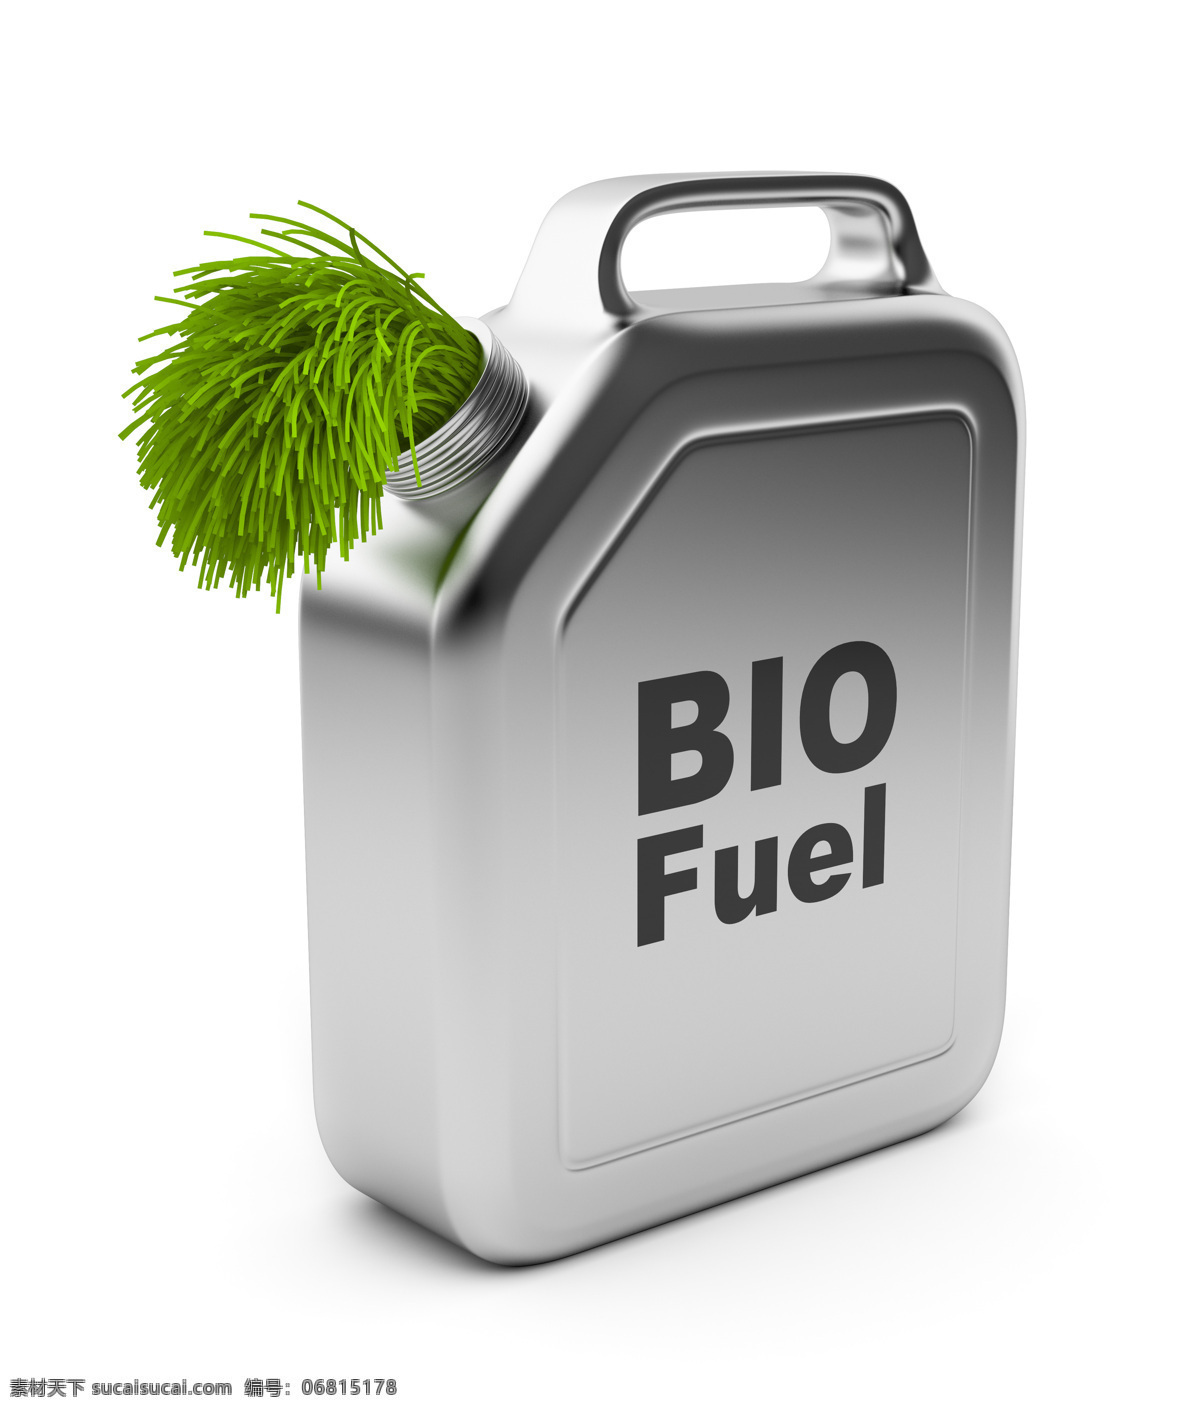 生态 燃料 油桶 生态燃料 草 能源 绿色 环保 其他类别 生活百科